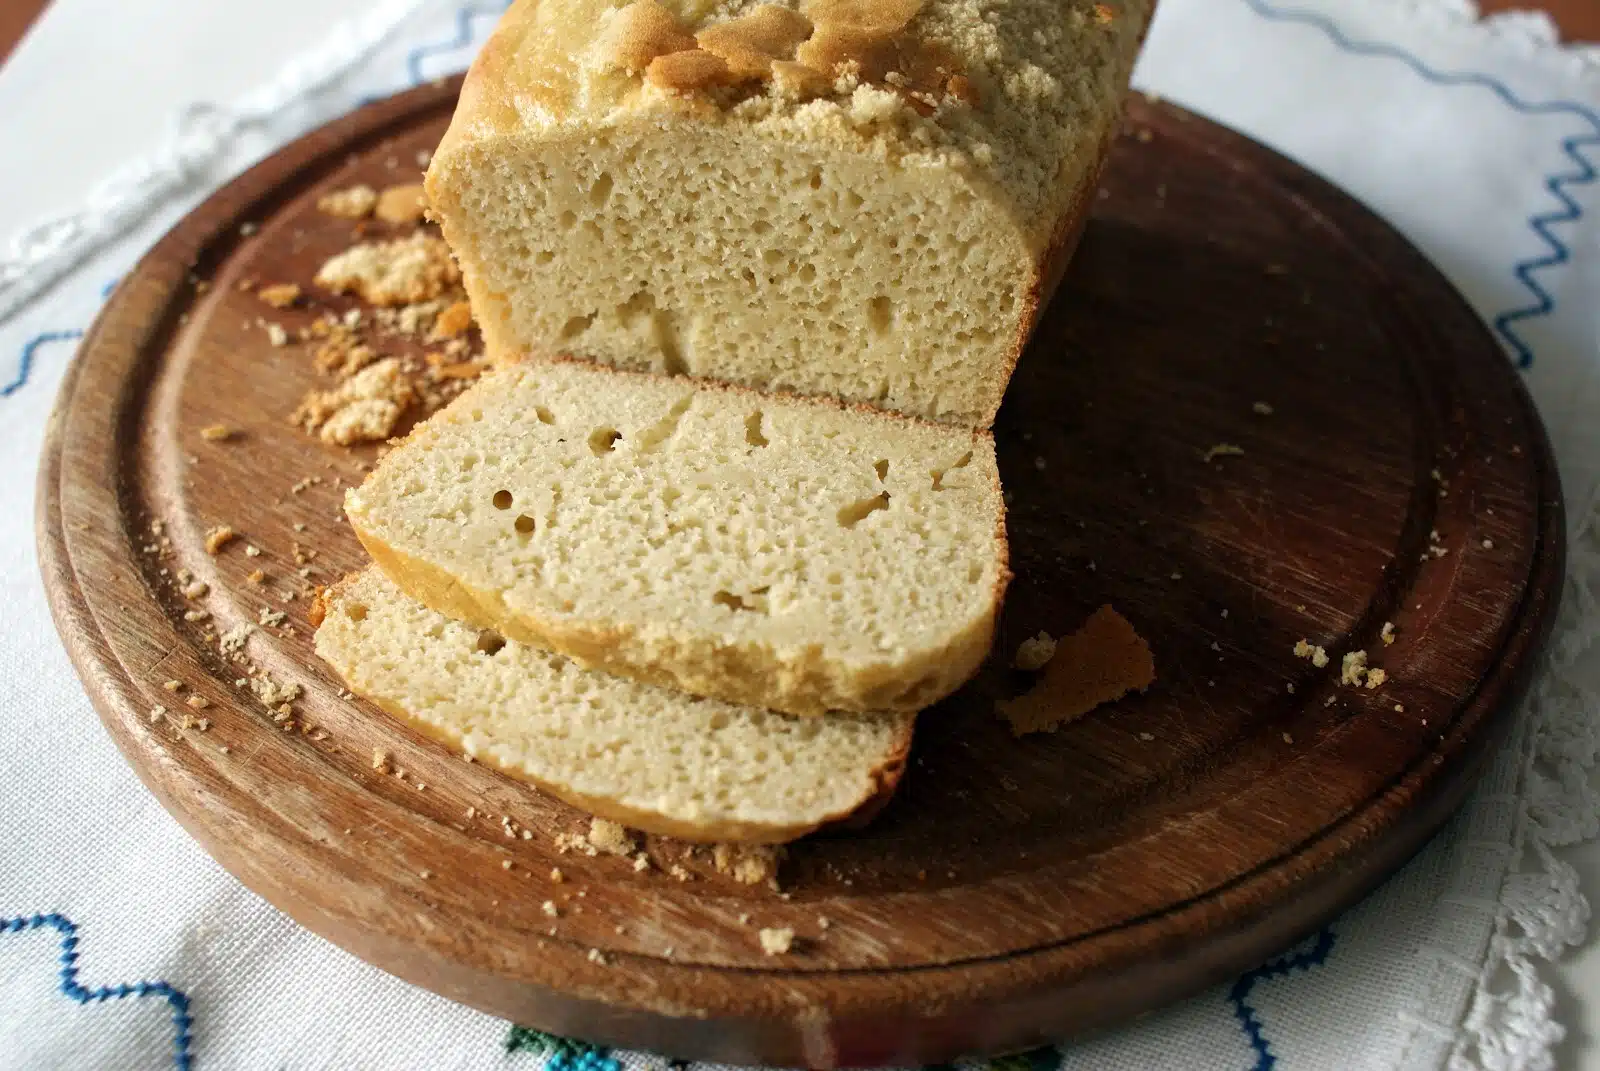 Esse pão não leva farinha de trigo, pois é um ingrediente com glúten. (Foto: Divulgação)